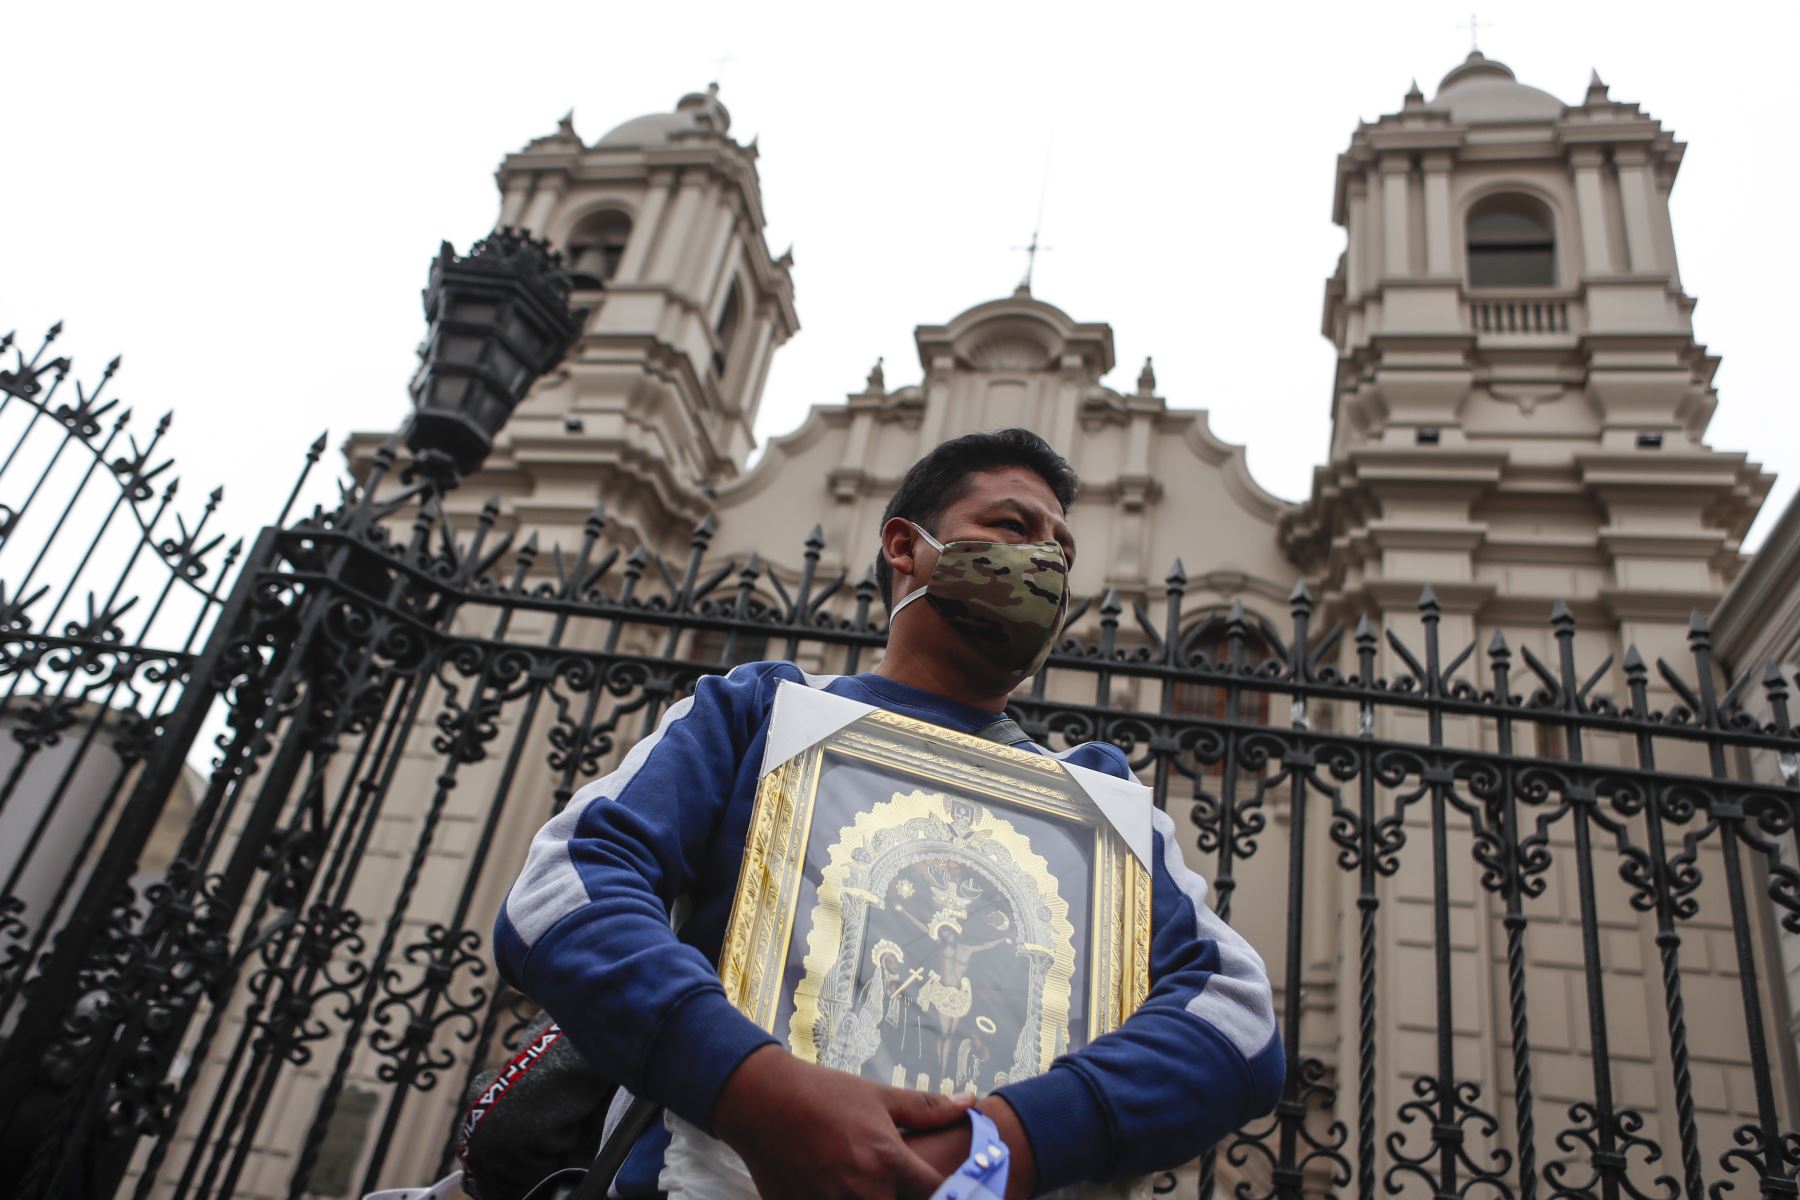 Las personas vulnerables deben limitar su presencia en los templos, recomendó el Arzobispado de Lima. Foto: ANDINA/Renato Pajuelo.